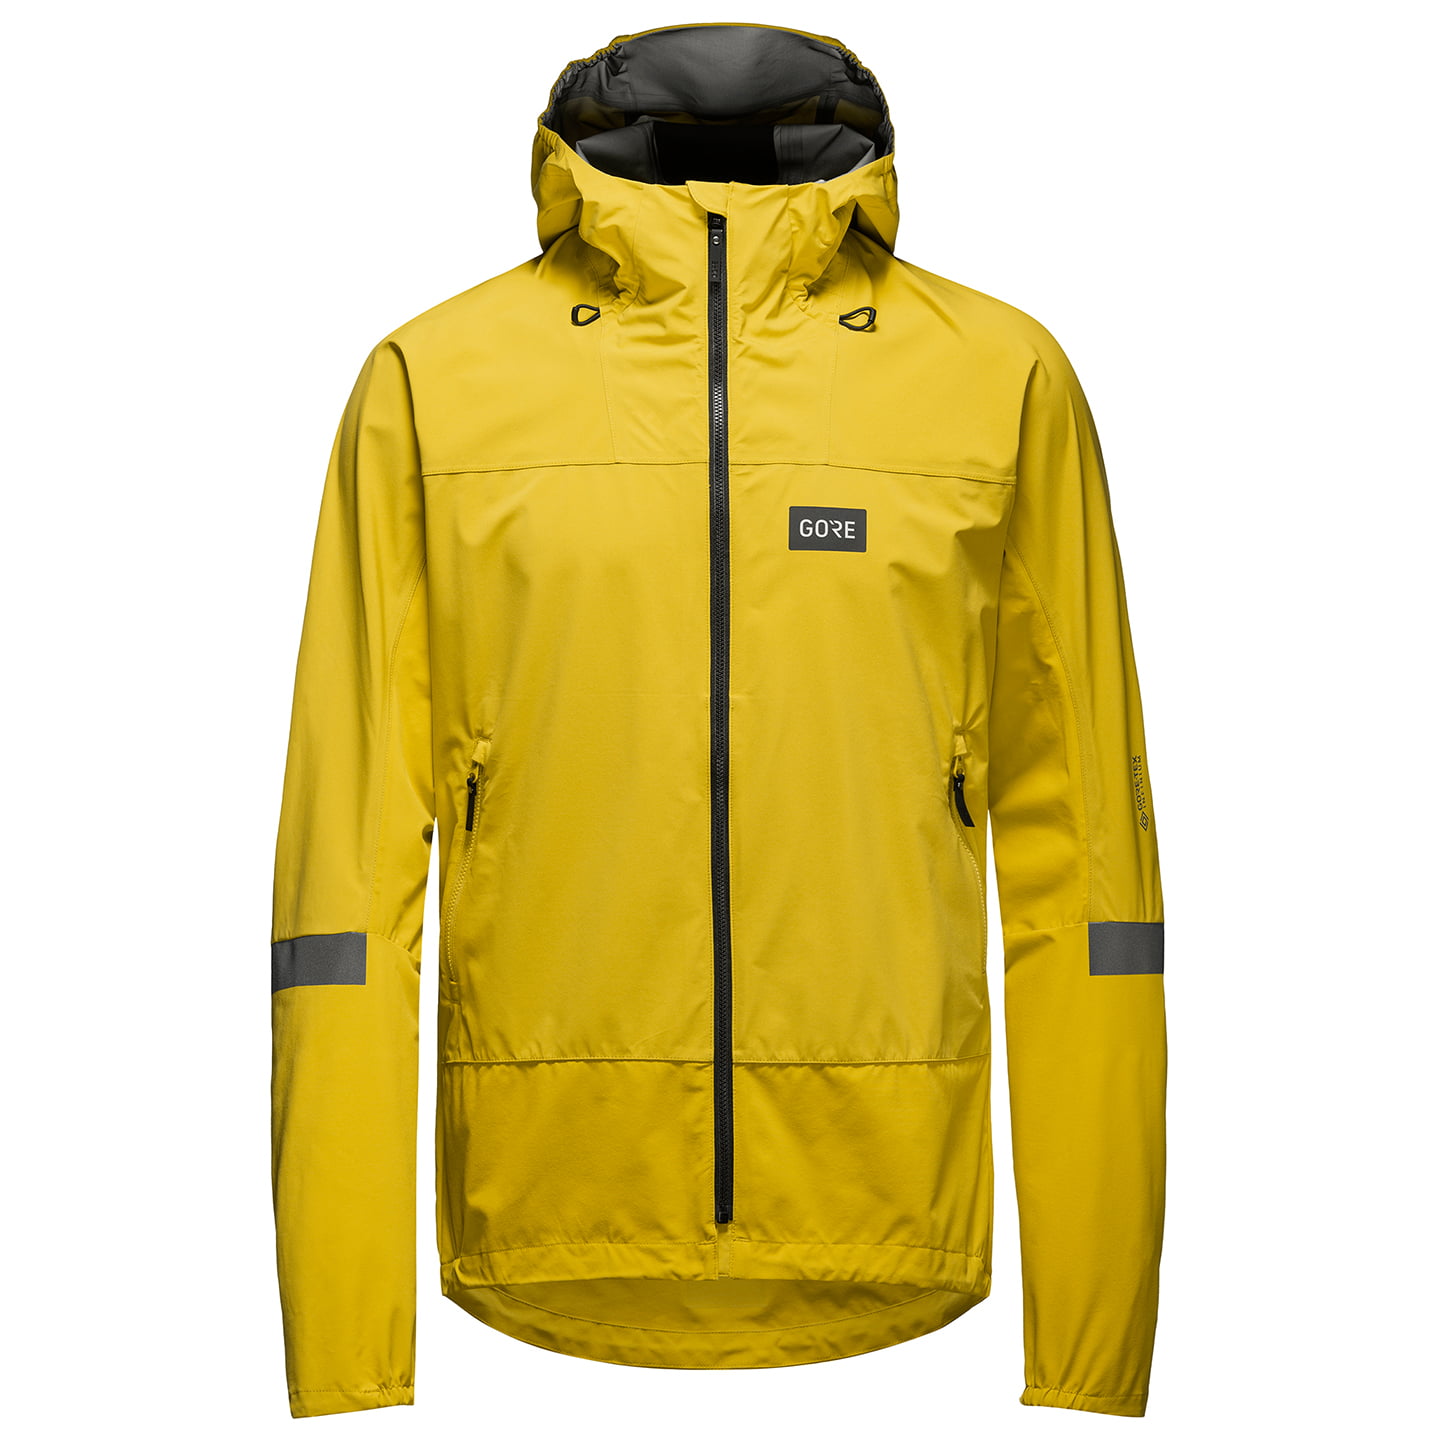 Lupra Wind Jacket, for men, size XL, Bike jacket, Cycle gear